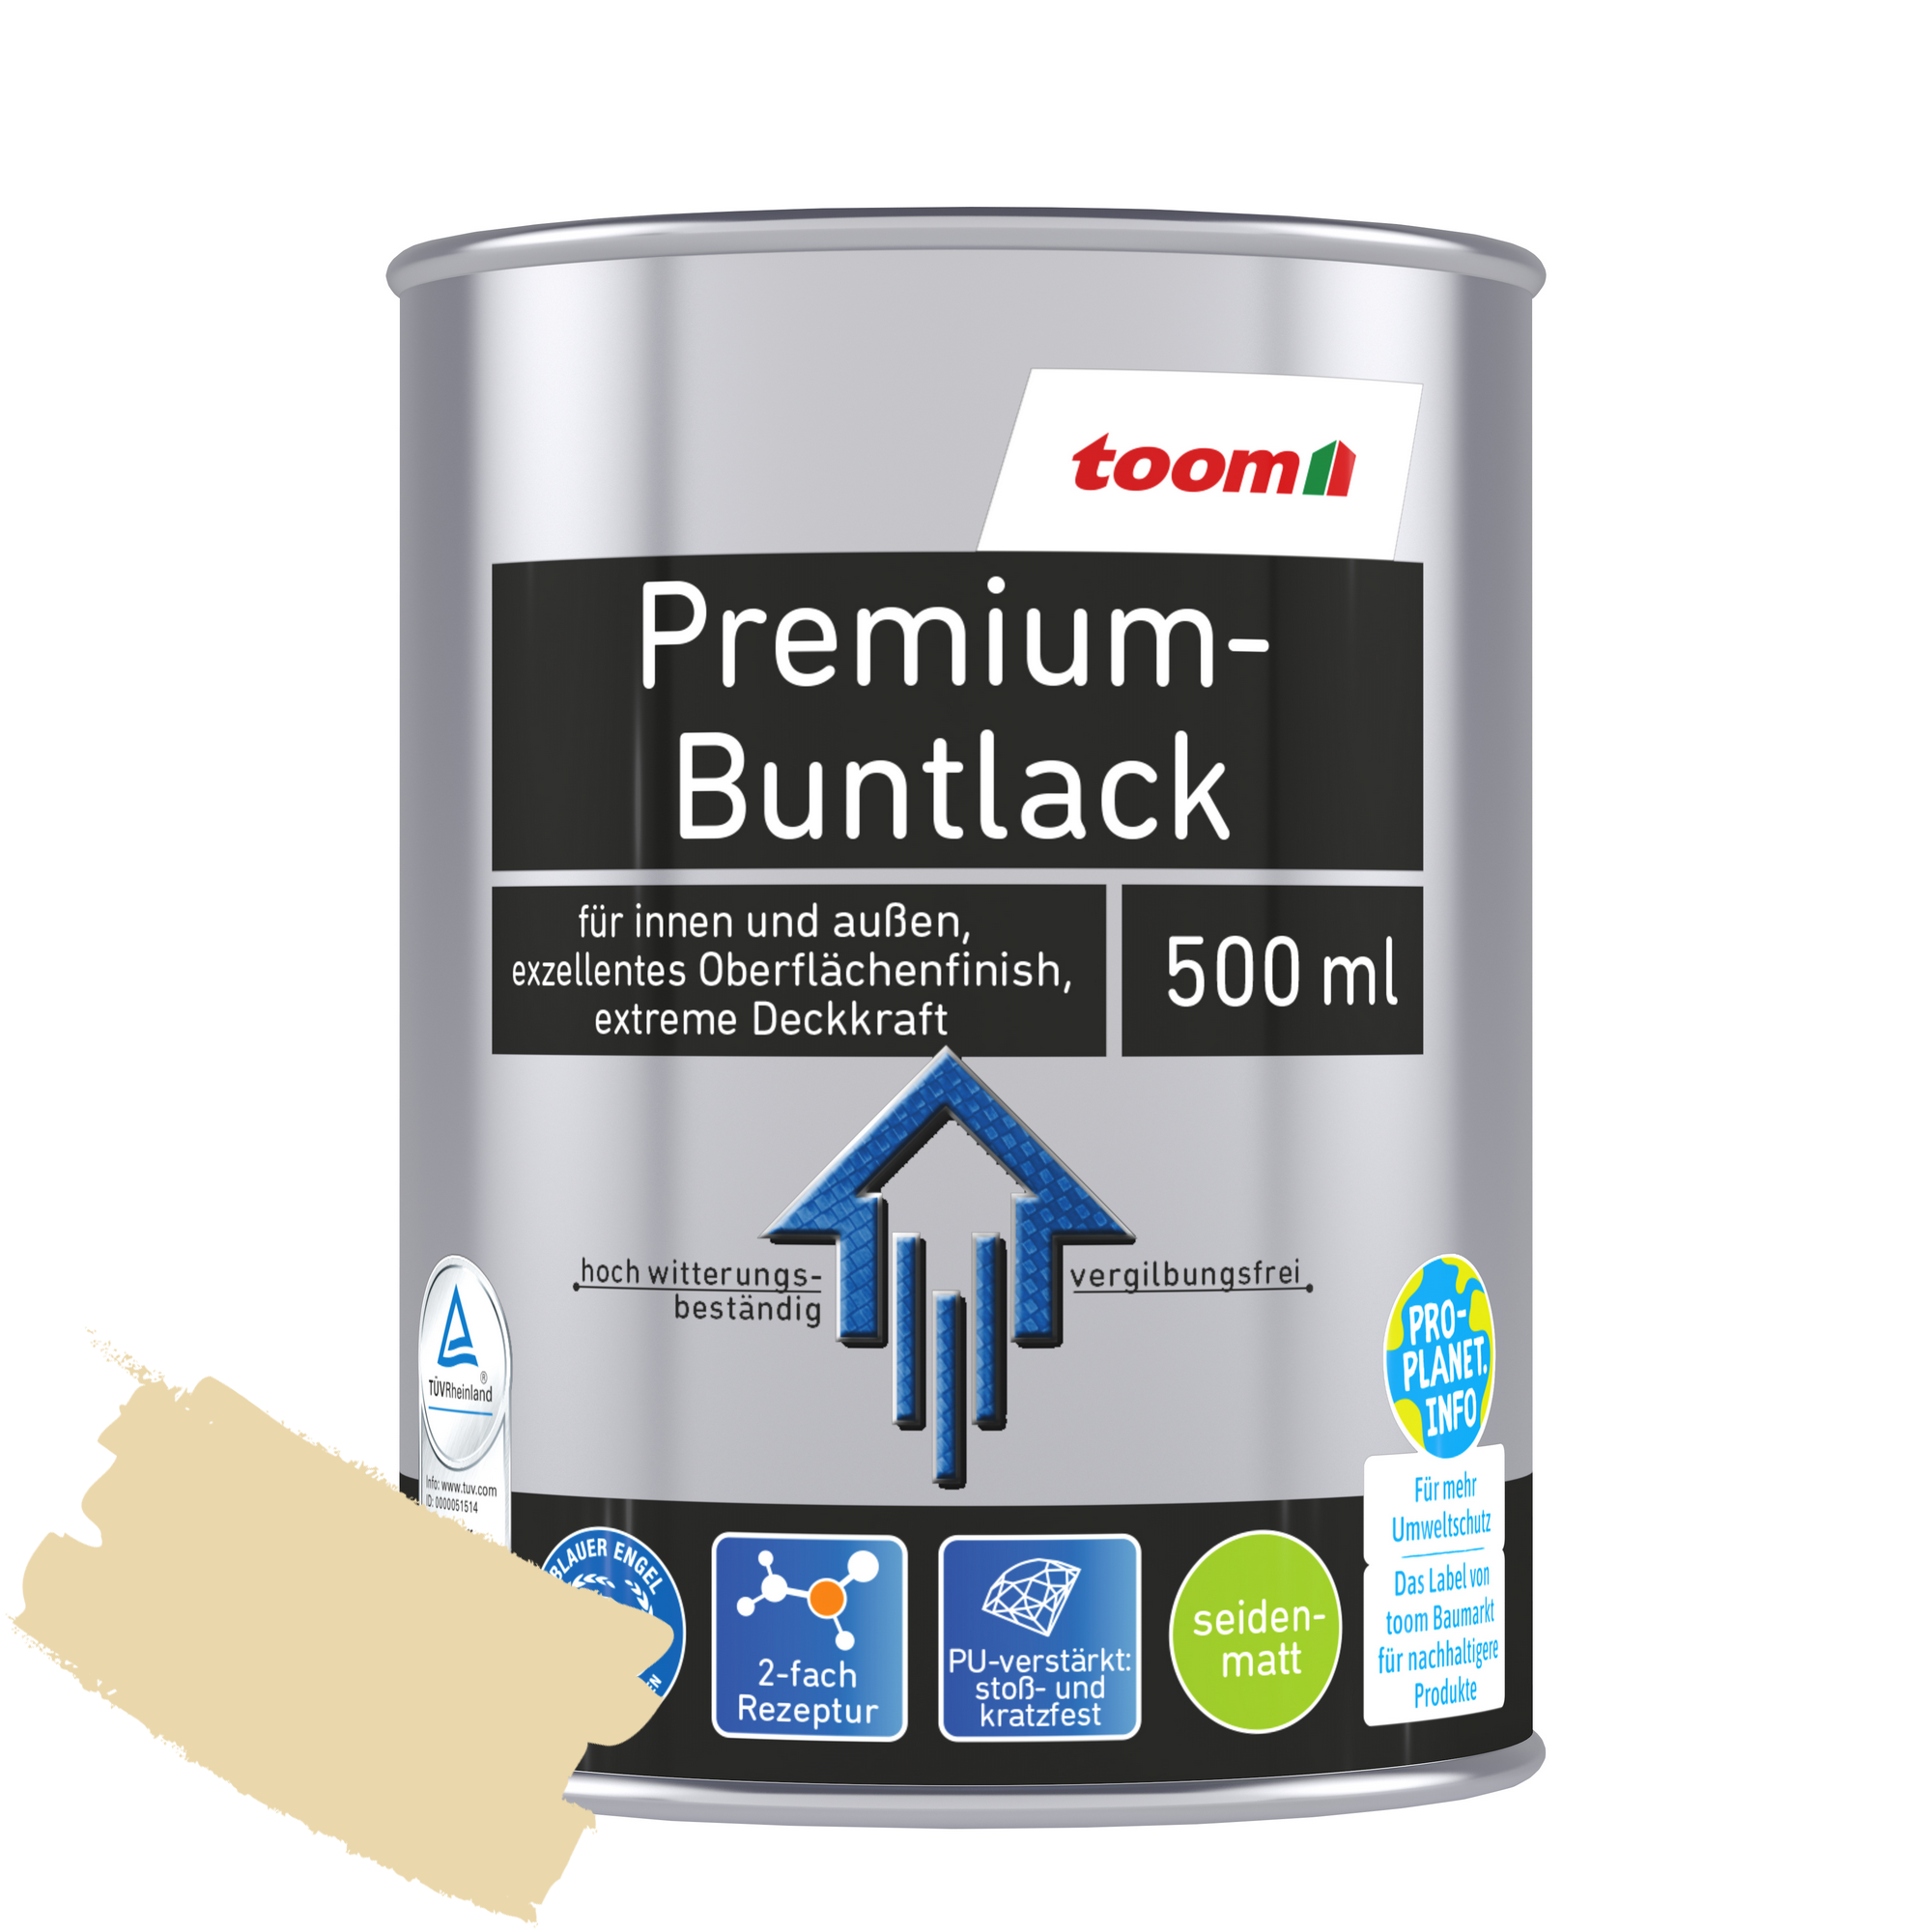 Premium-Buntlack elfenbeinfarben seidenmatt 500 ml + product picture